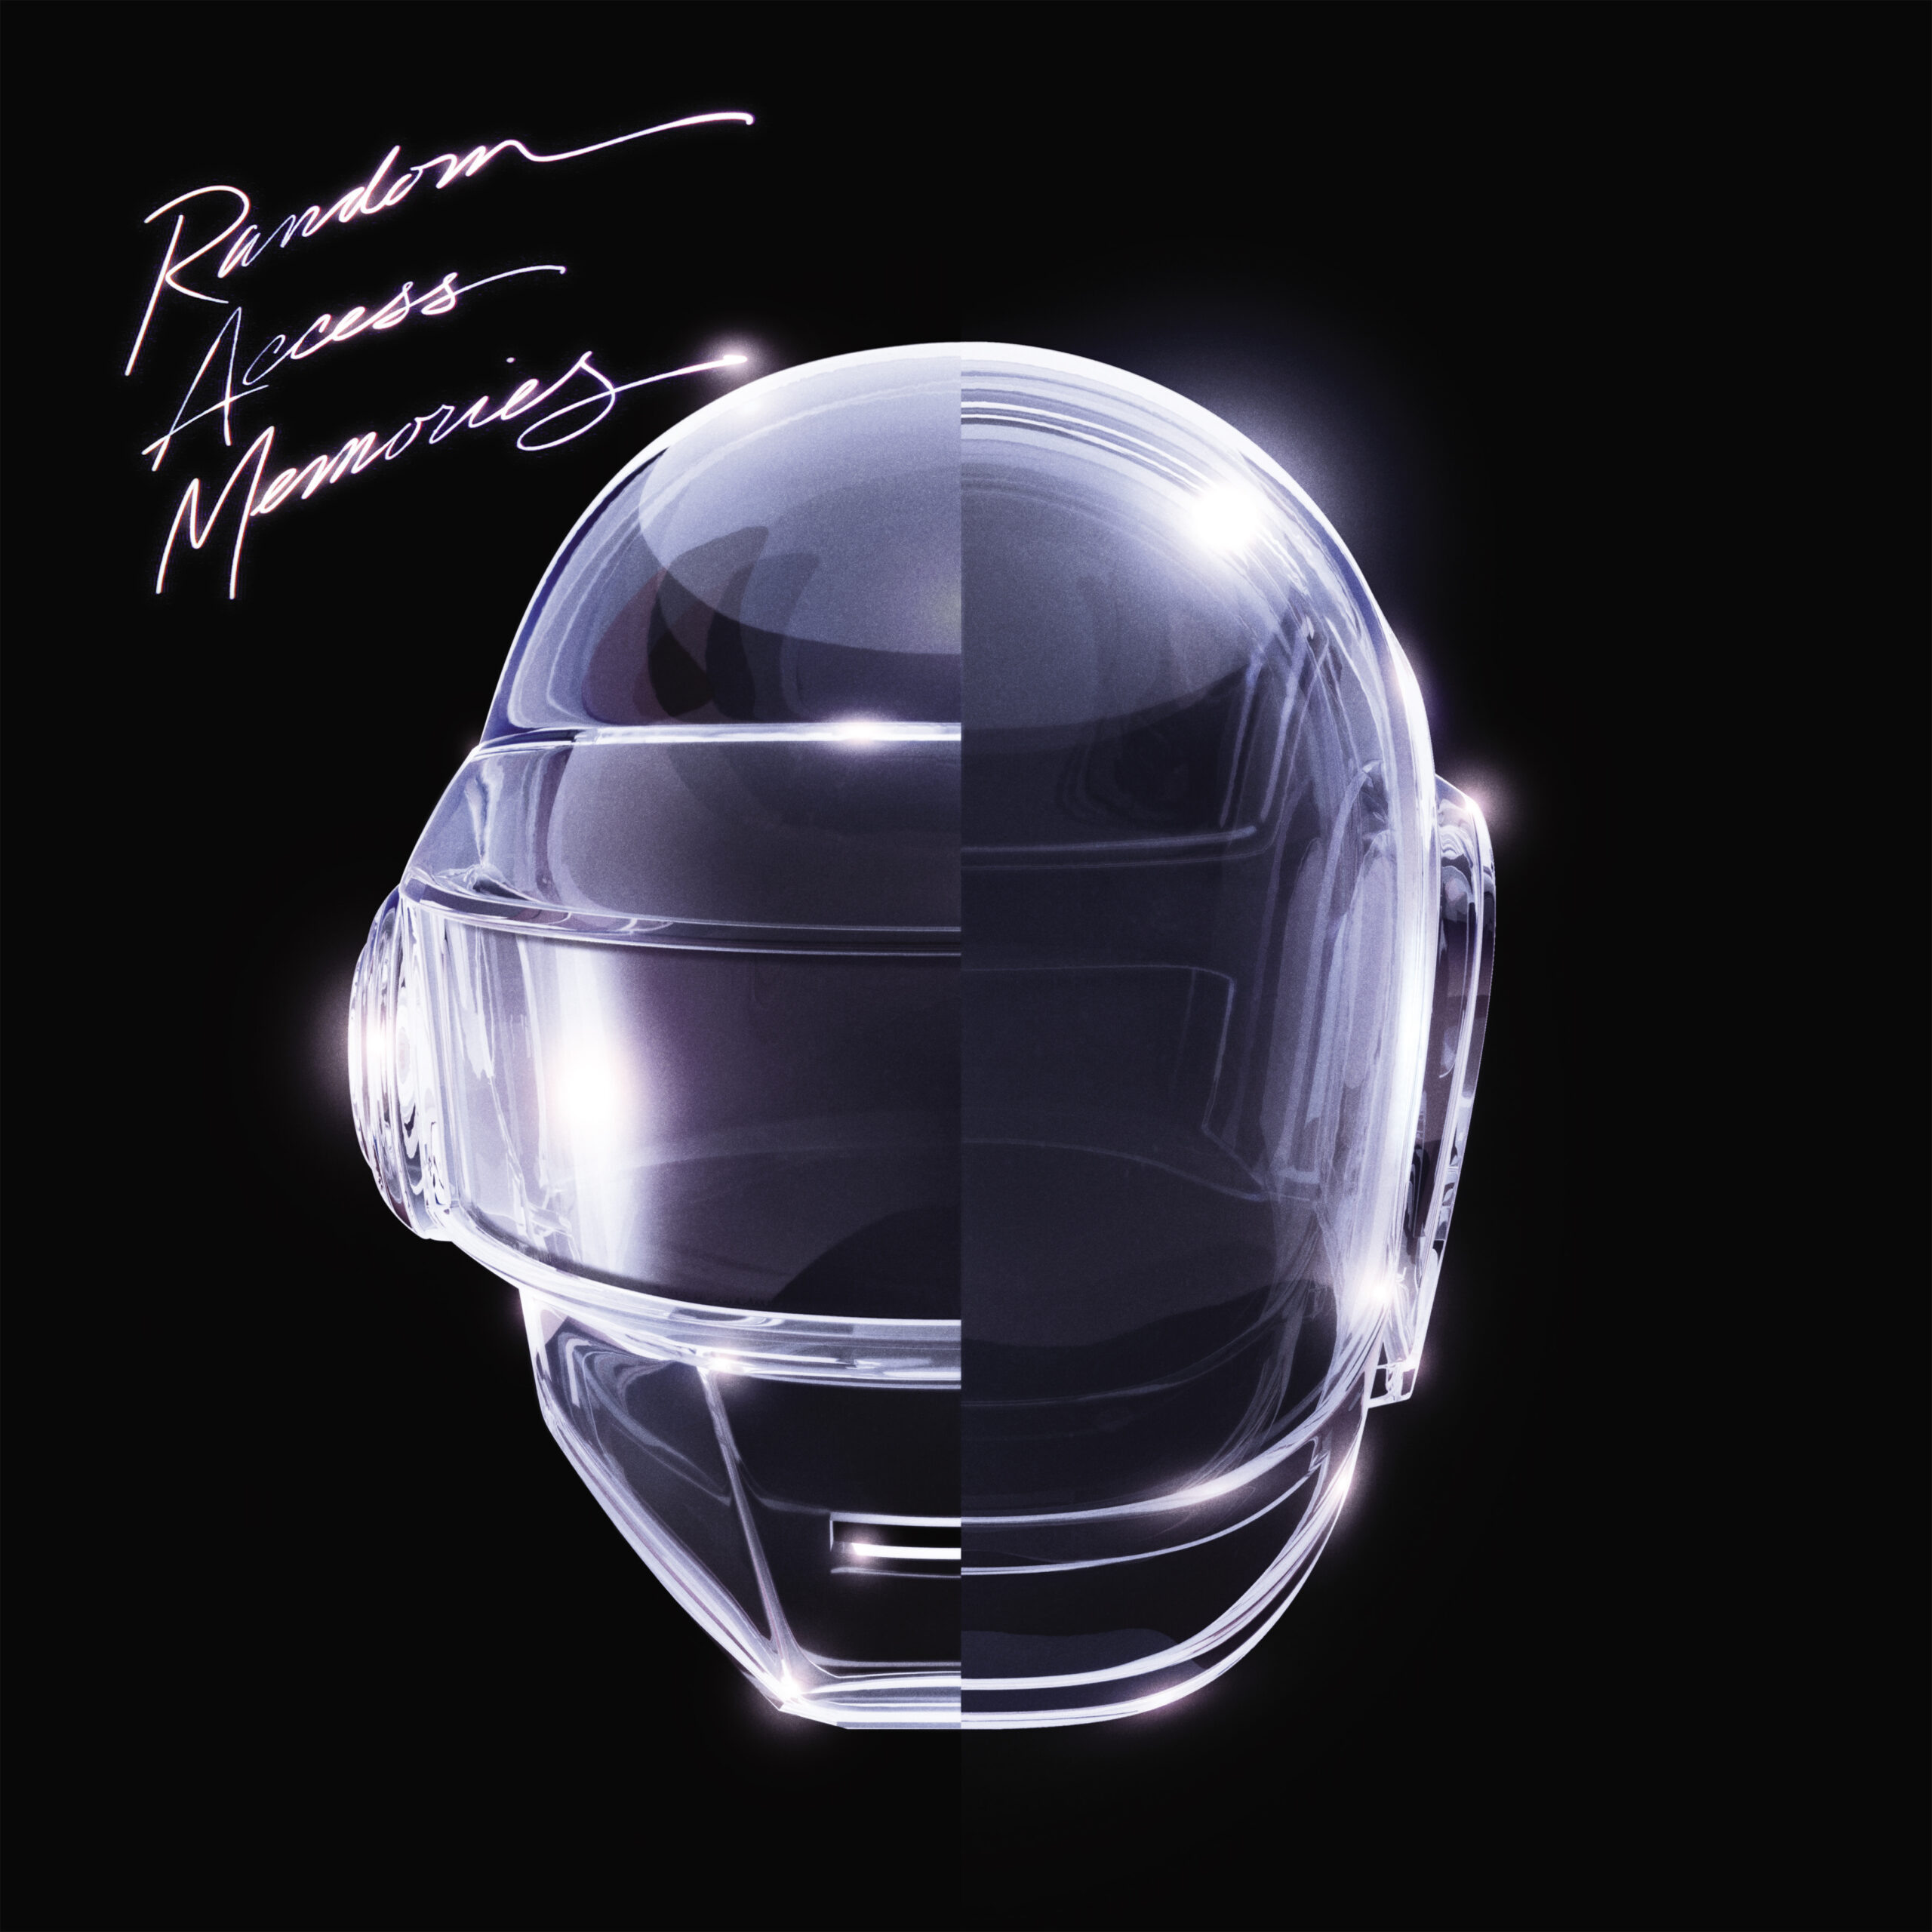 Daft Punk lança "The Writing of Fragments of Time", primeira amostra da versão estendida do álbum "Random Access Memories"